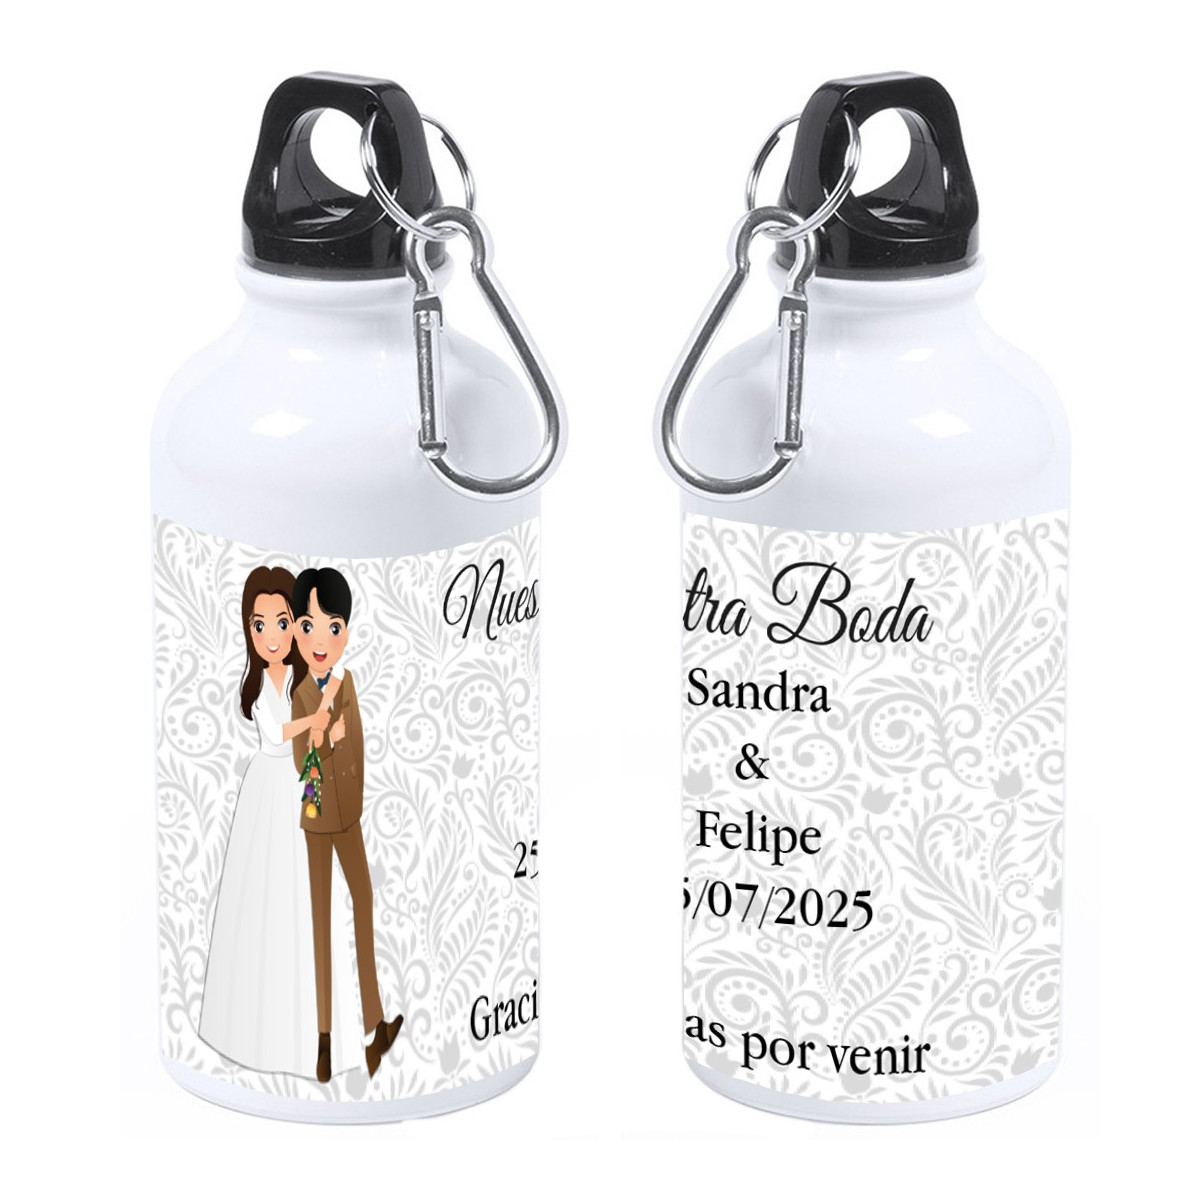 Botella personalizada con nombre de invitado o frase de agradecimiento nombre de los novios y fecha de la boda